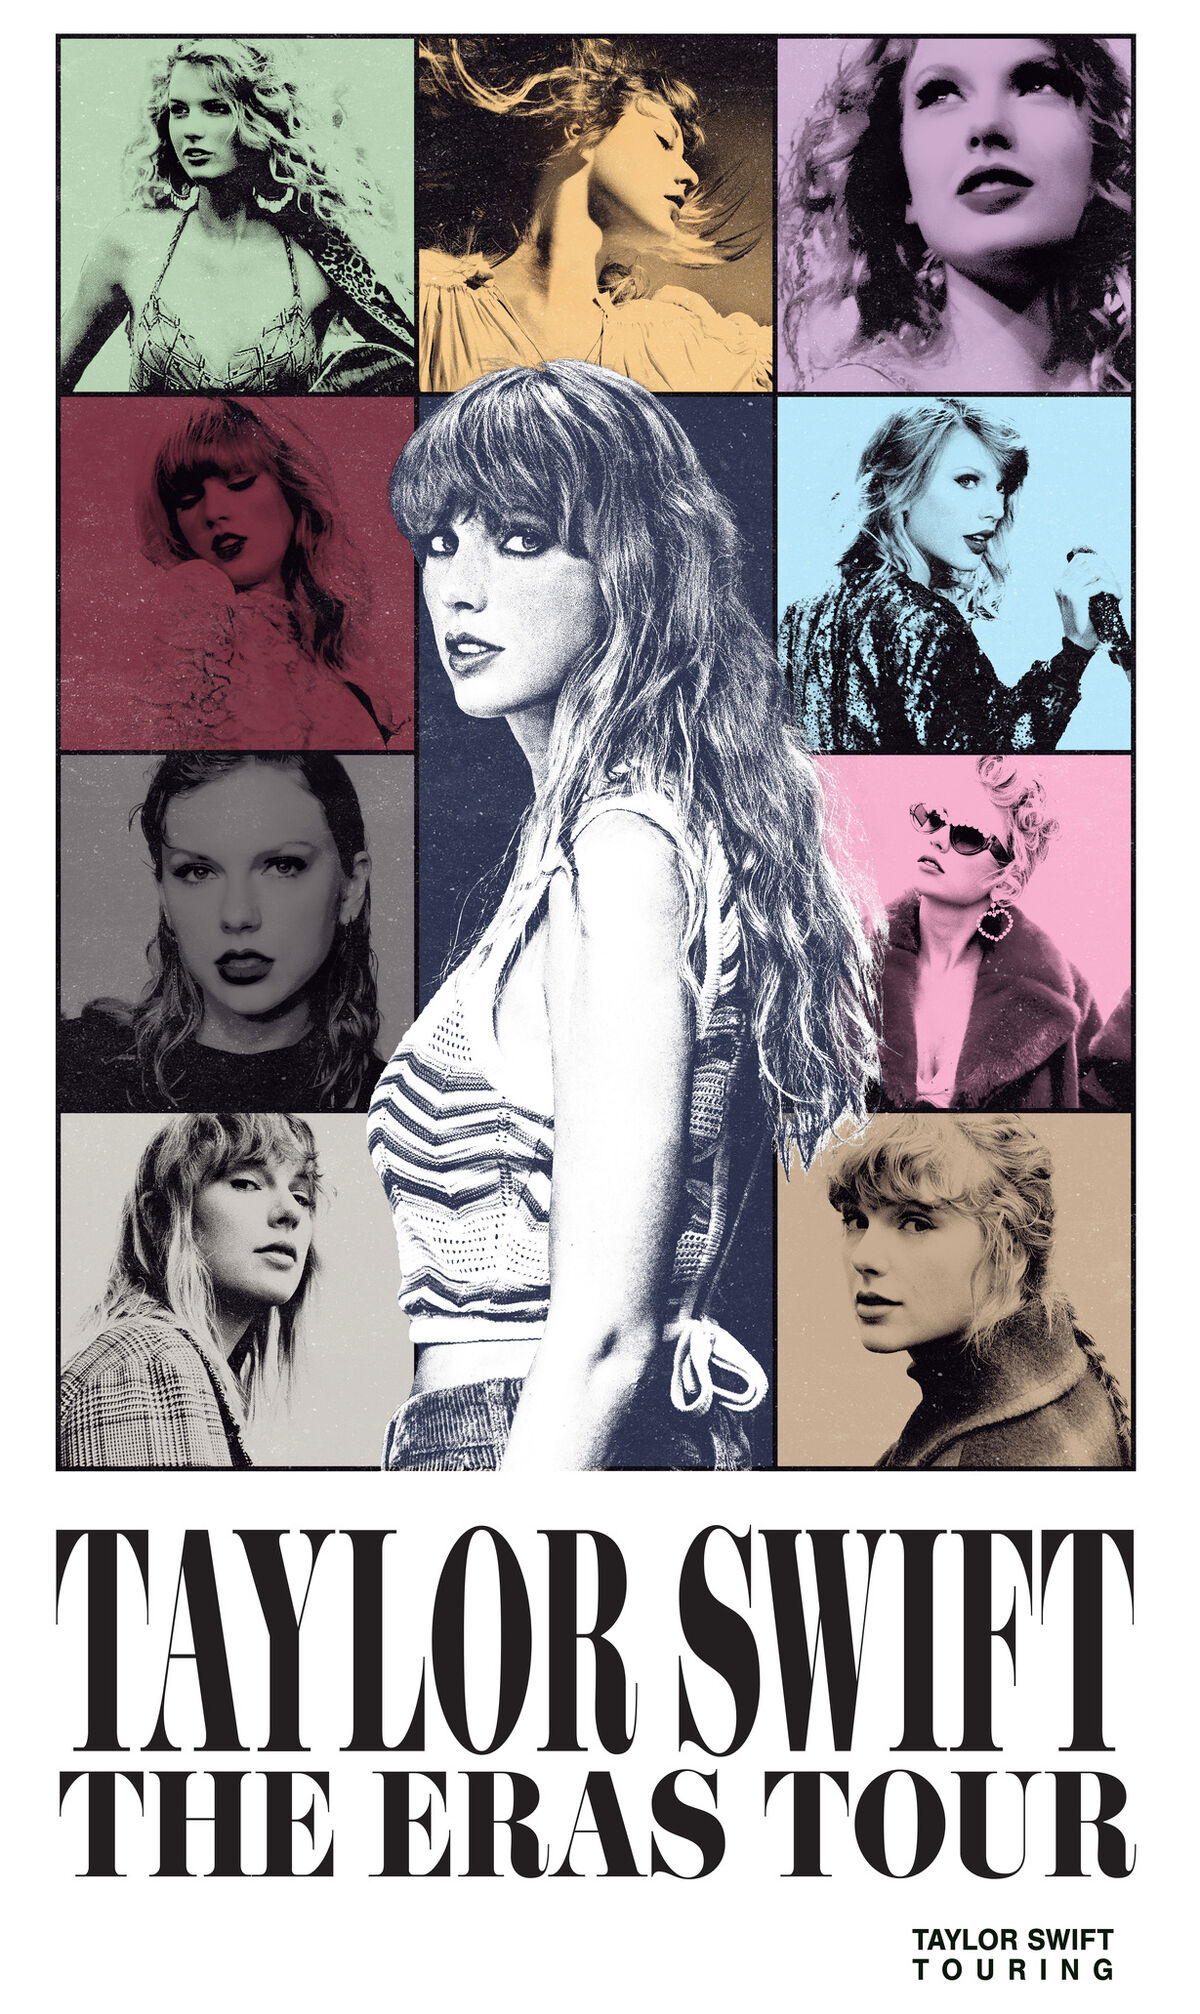 How to get Taylor Swift Eras Tour merch in Cincinnati